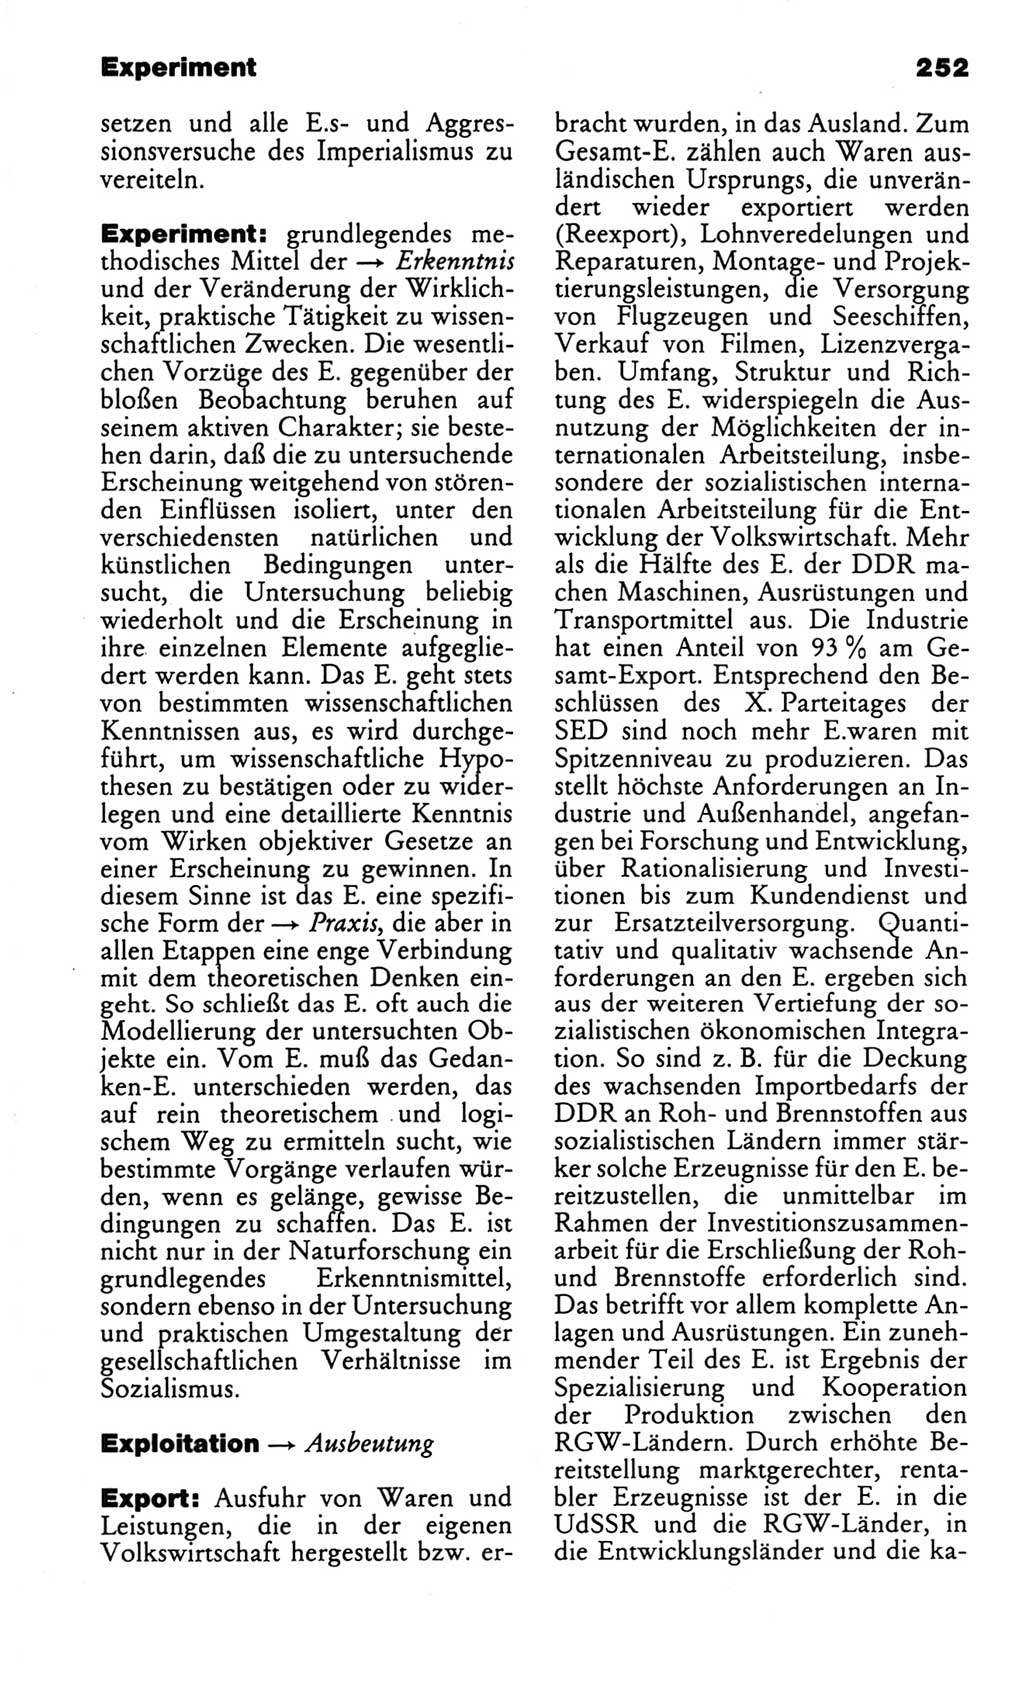 Kleines politisches Wörterbuch [Deutsche Demokratische Republik (DDR)] 1986, Seite 252 (Kl. pol. Wb. DDR 1986, S. 252)